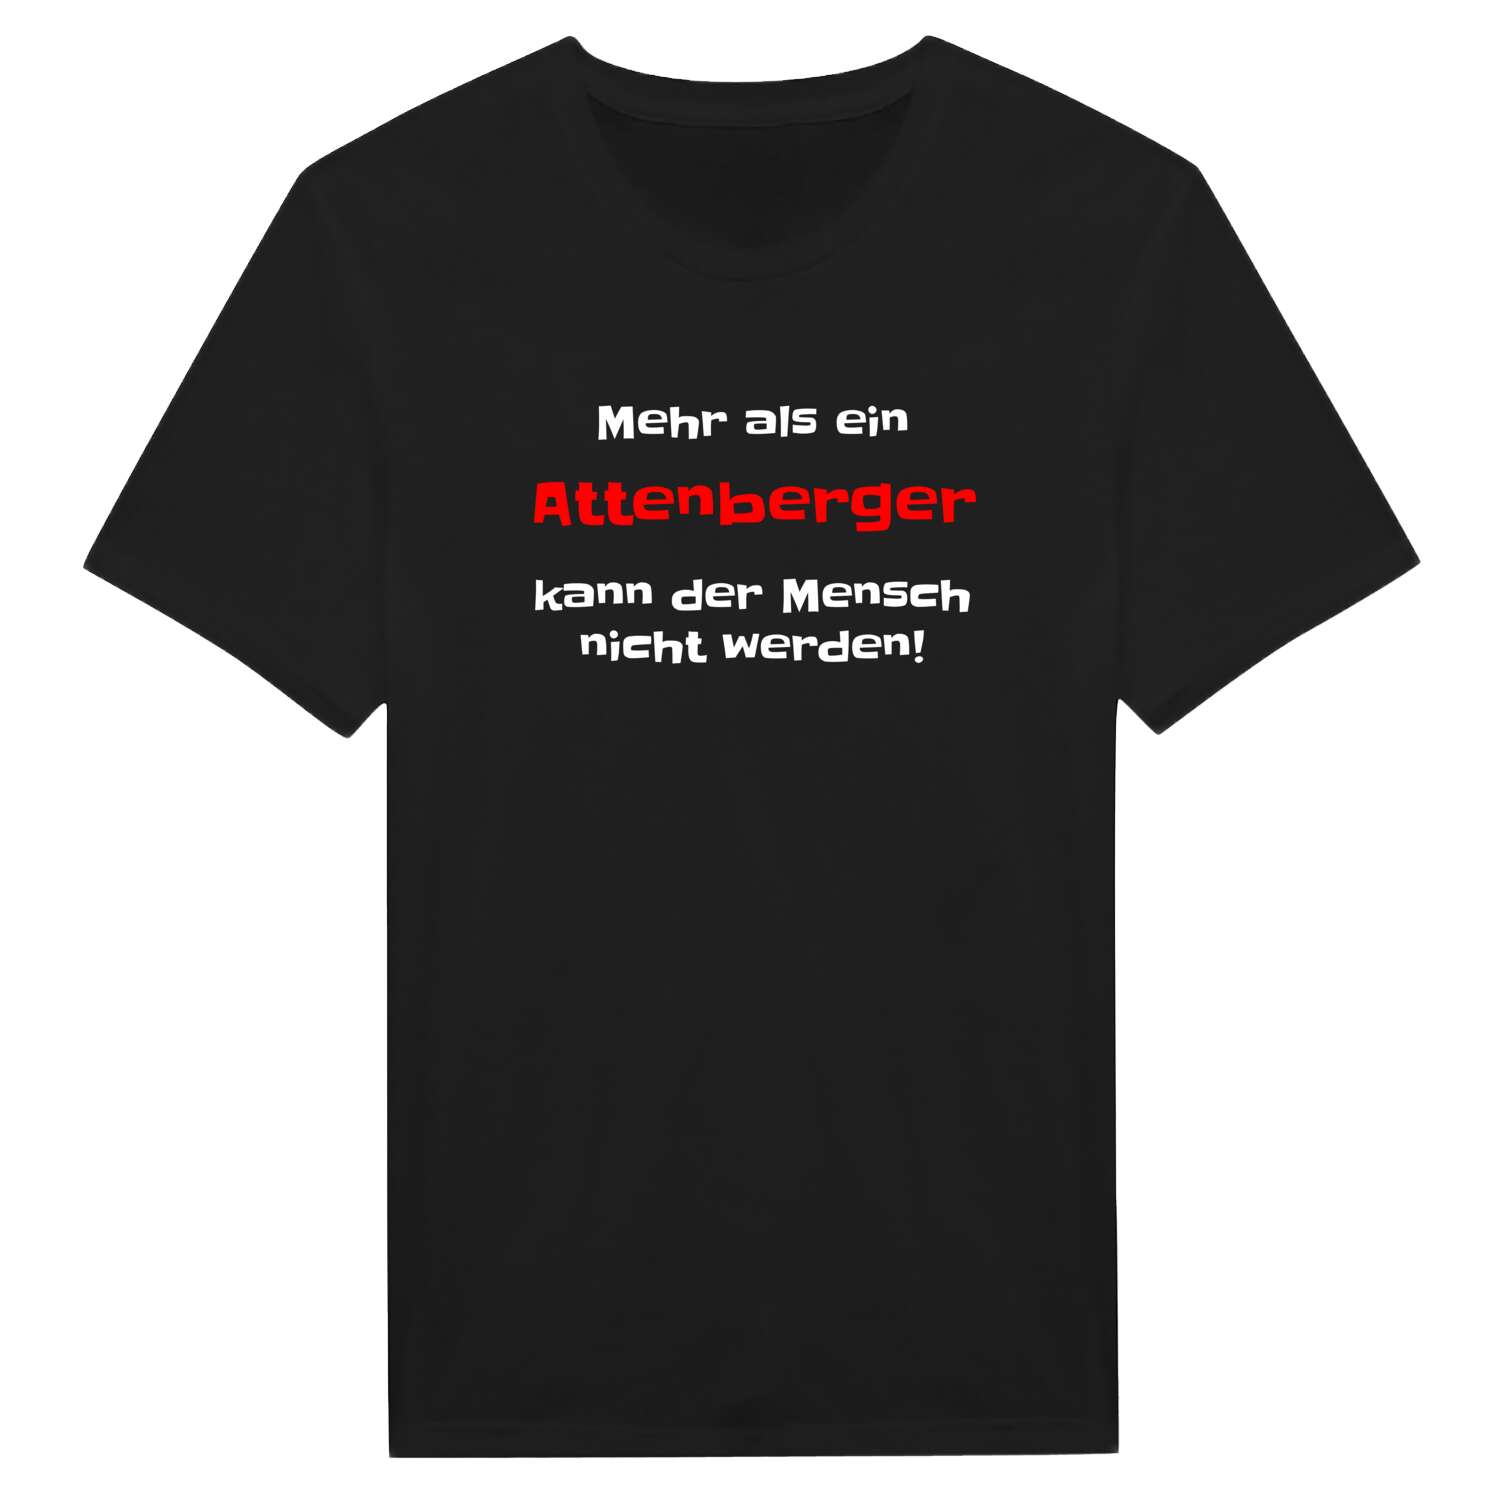 Attenberg T-Shirt »Mehr als ein«